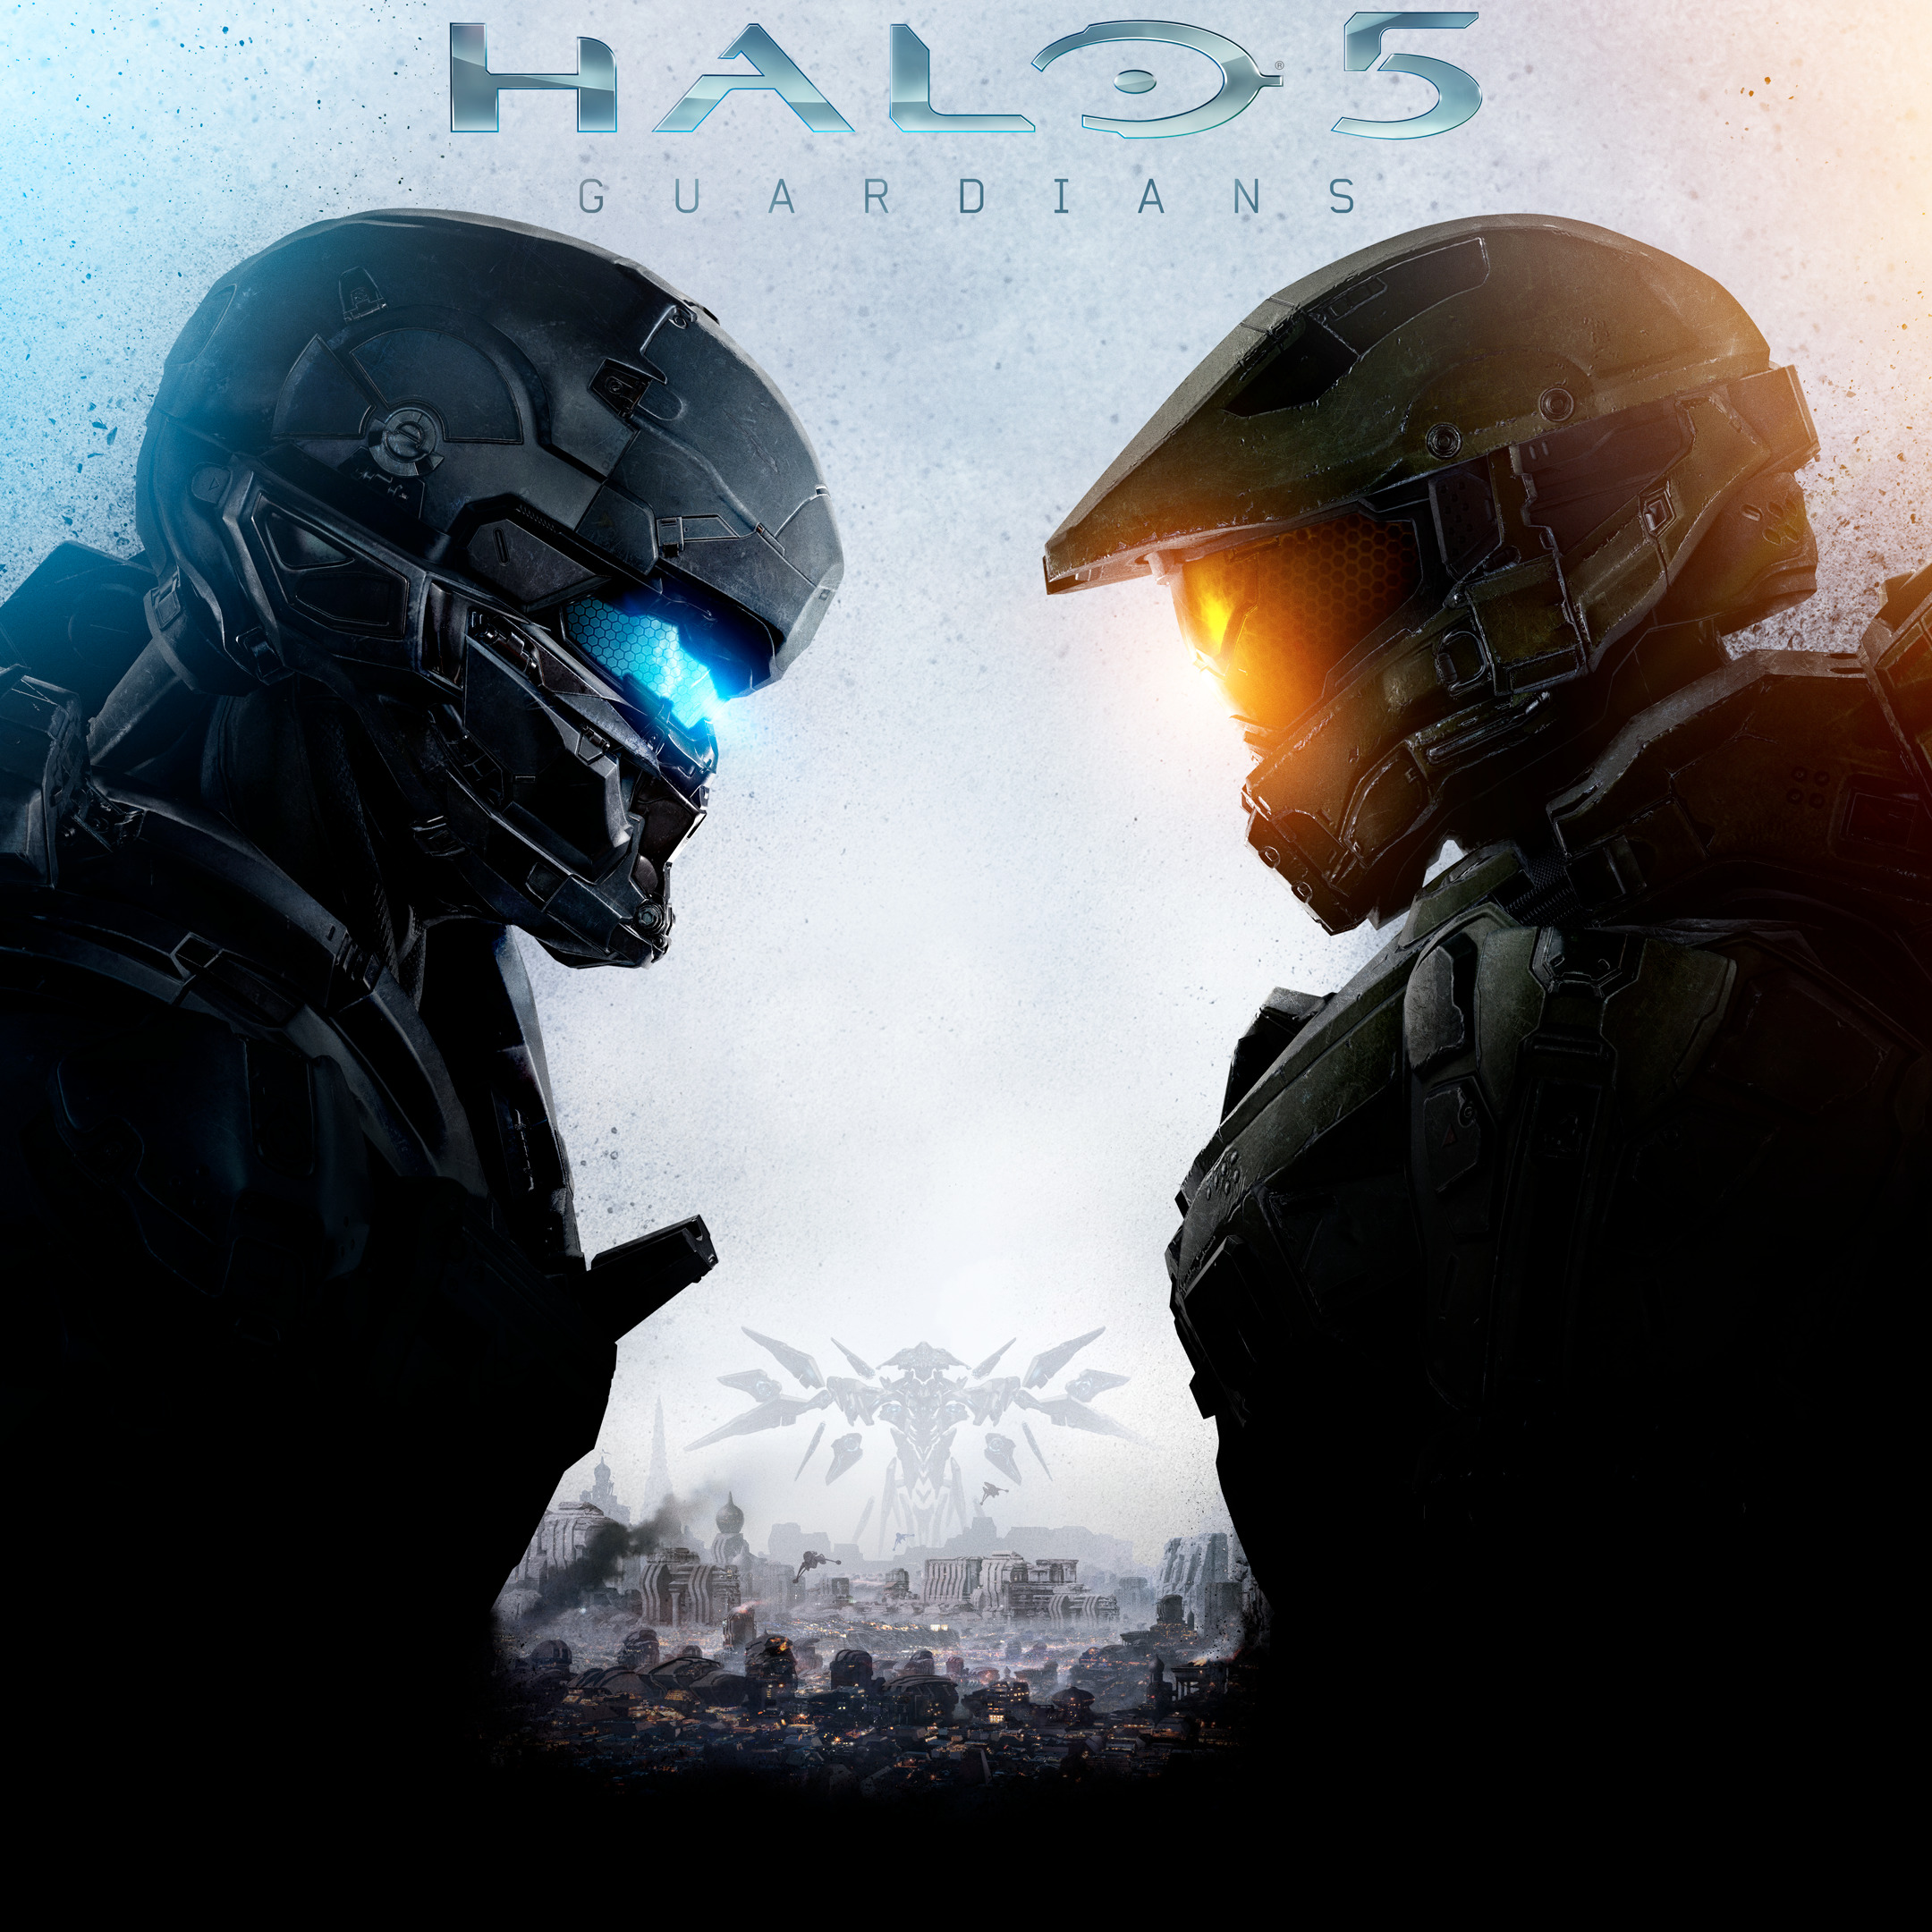 Best 'Halo' Games, Ranked - Metacritic